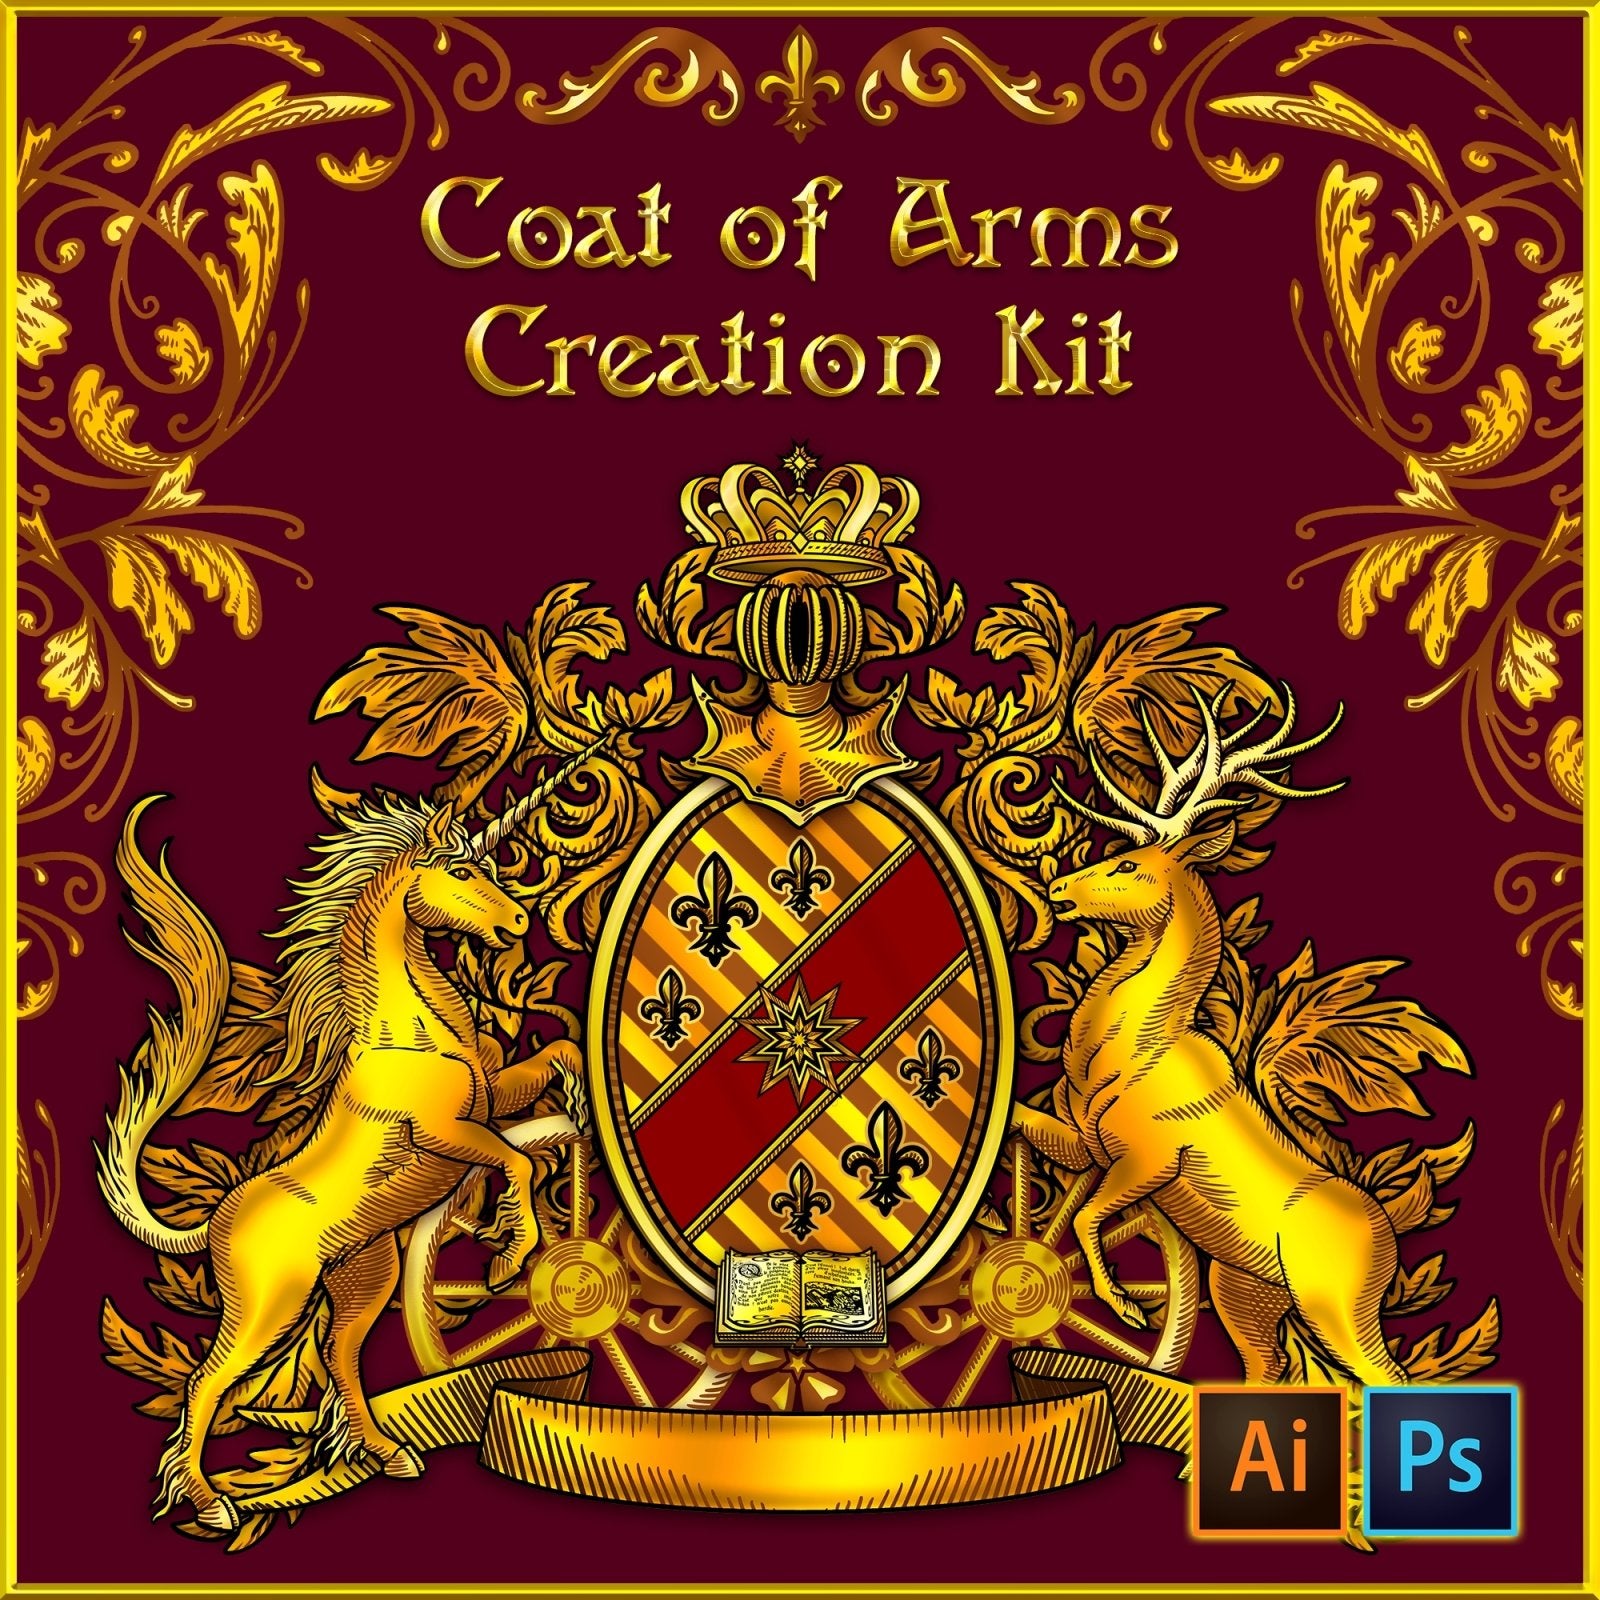 Custom Gold Coat of Arms Creation Kit, DIY Family Crest, Heraldry, Vintage Logo Design - Digital Download, vectors - Abysm Internal